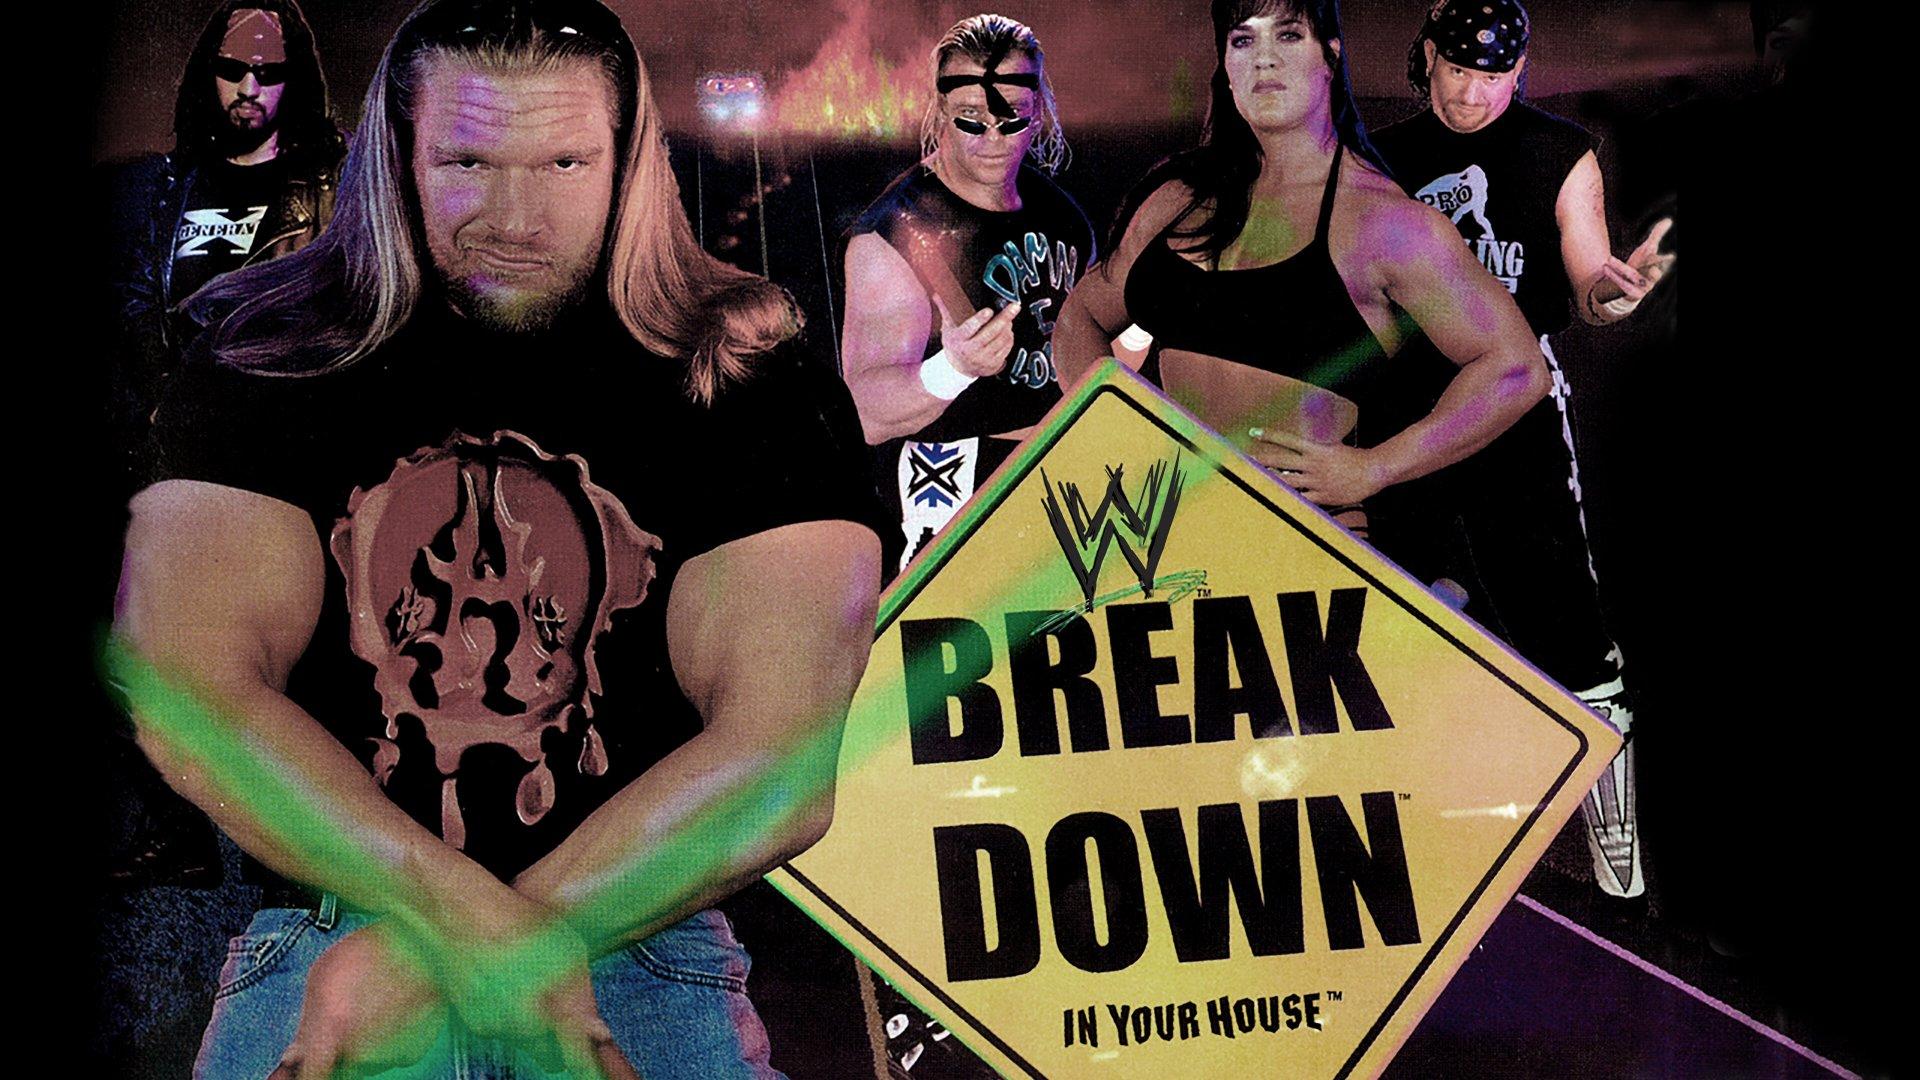 WWF Breakdown 1998